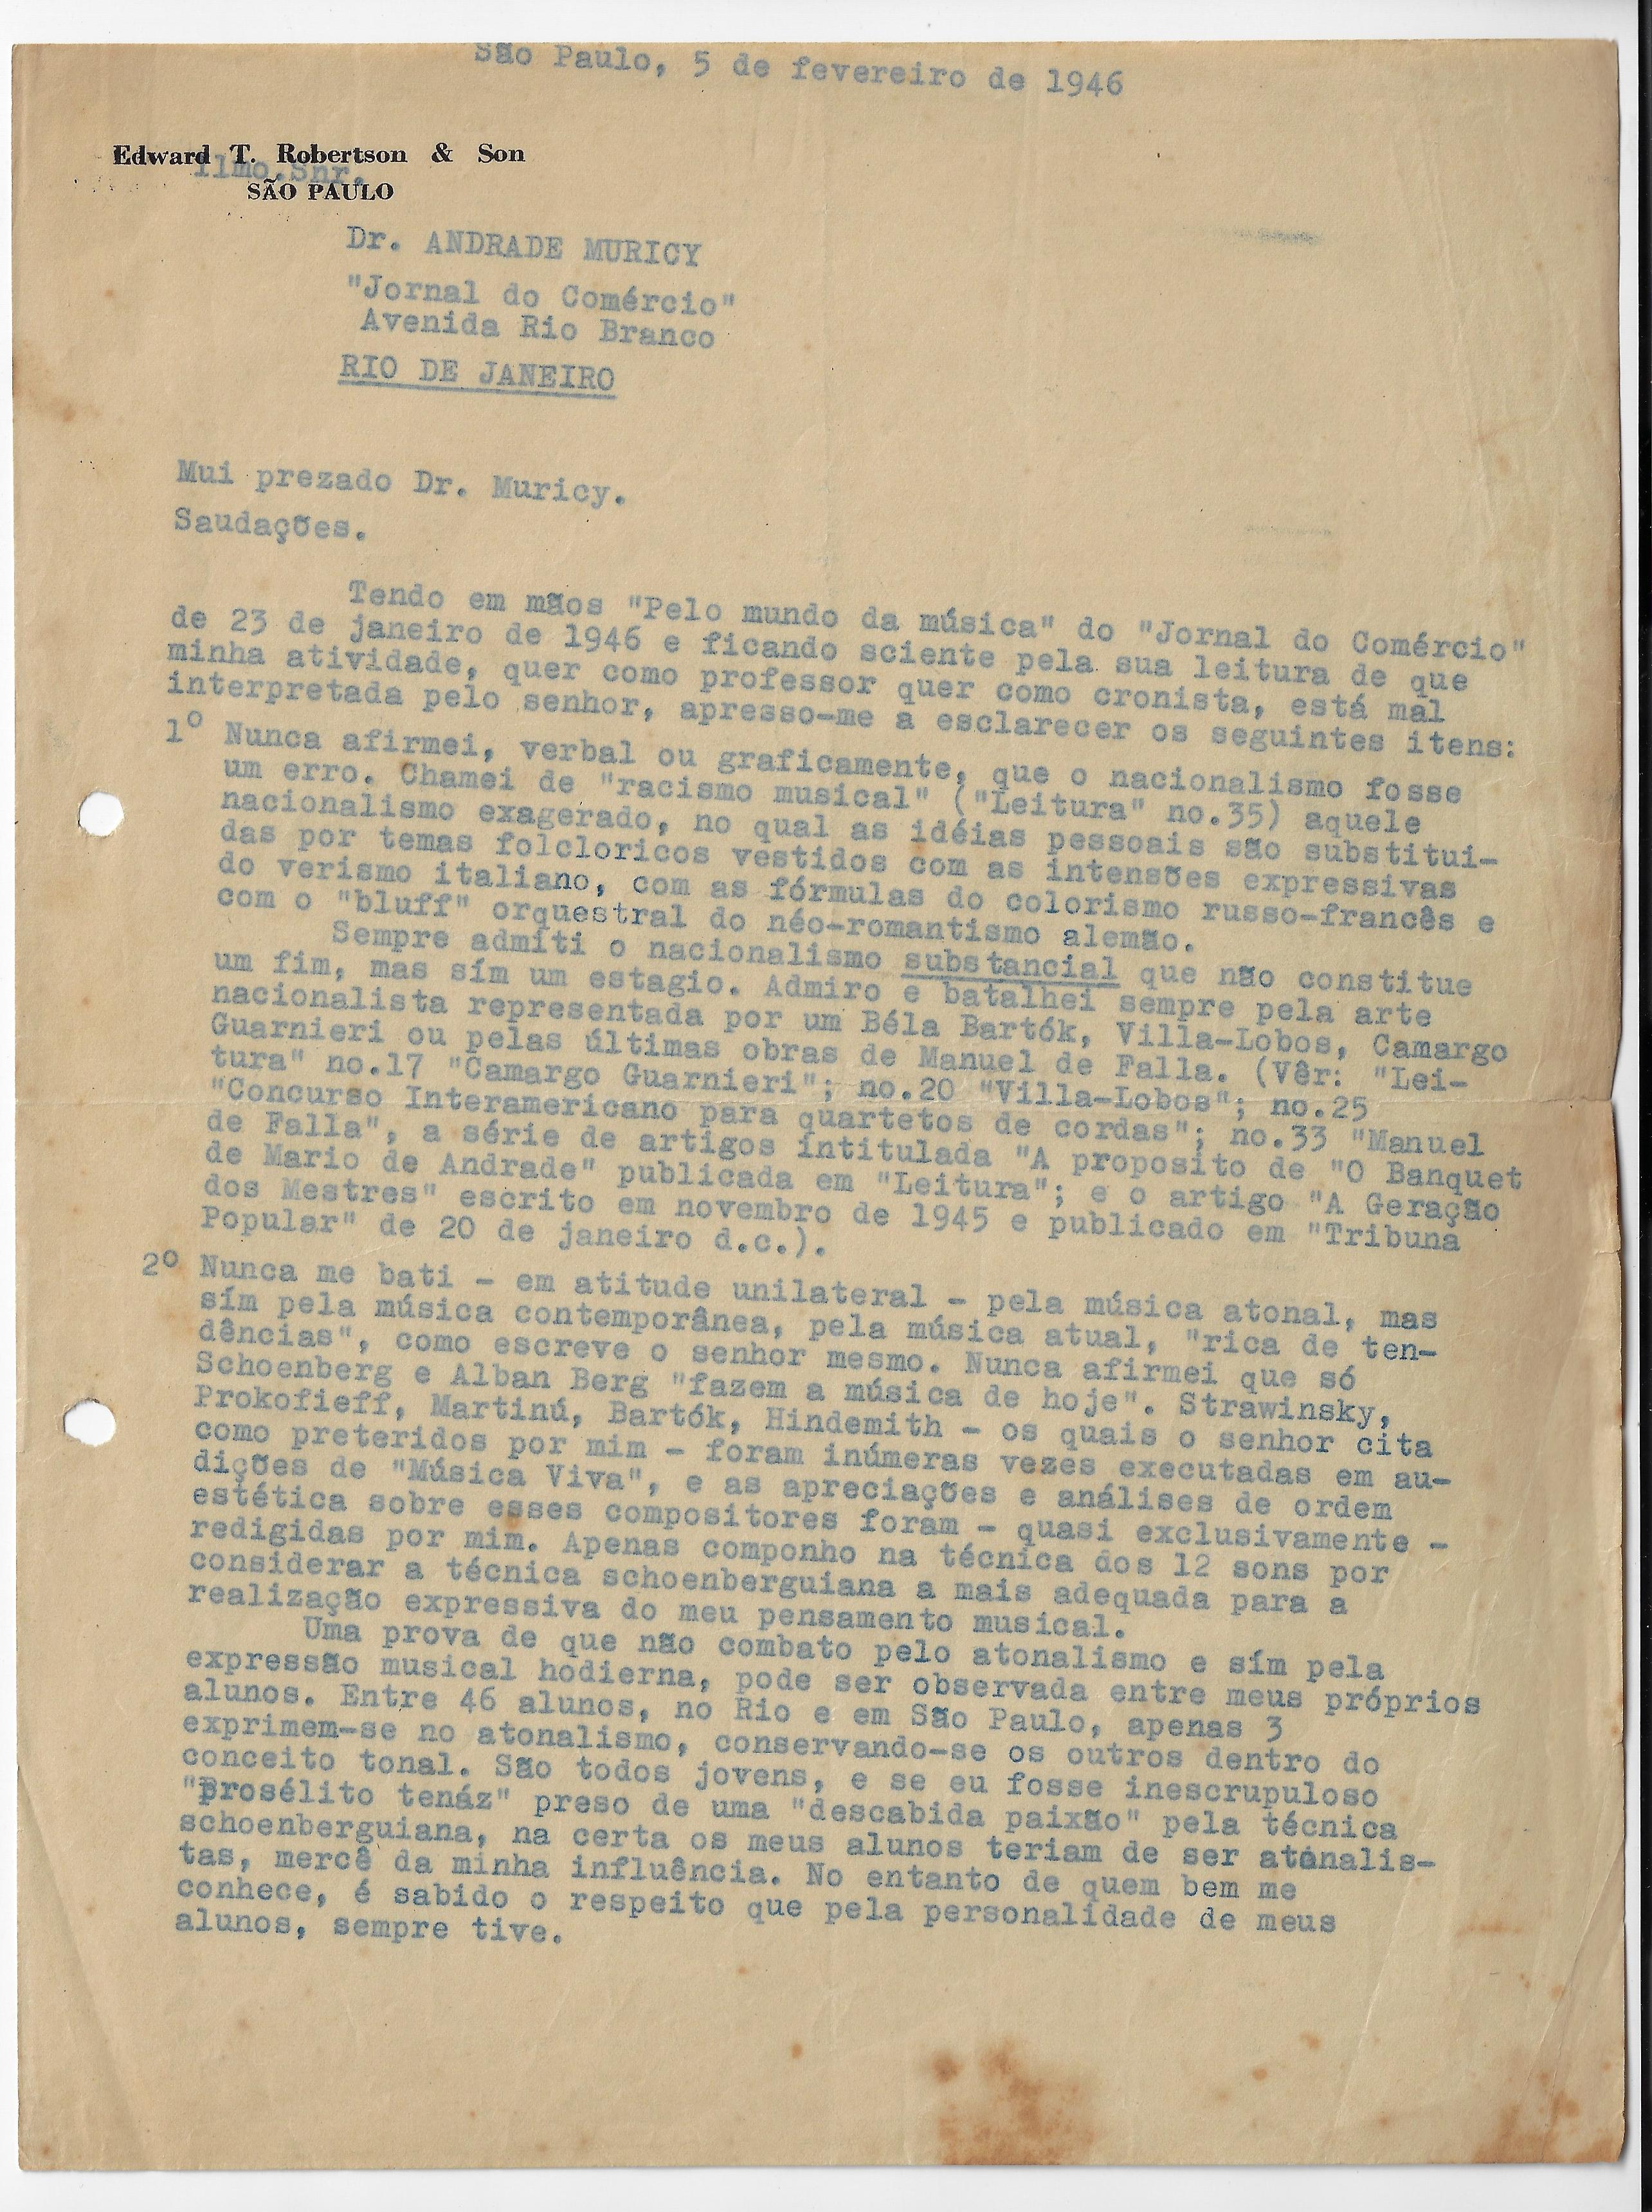 Carta de Koellreutter a Andrade Muricy em 05 de fevereiro de 1946